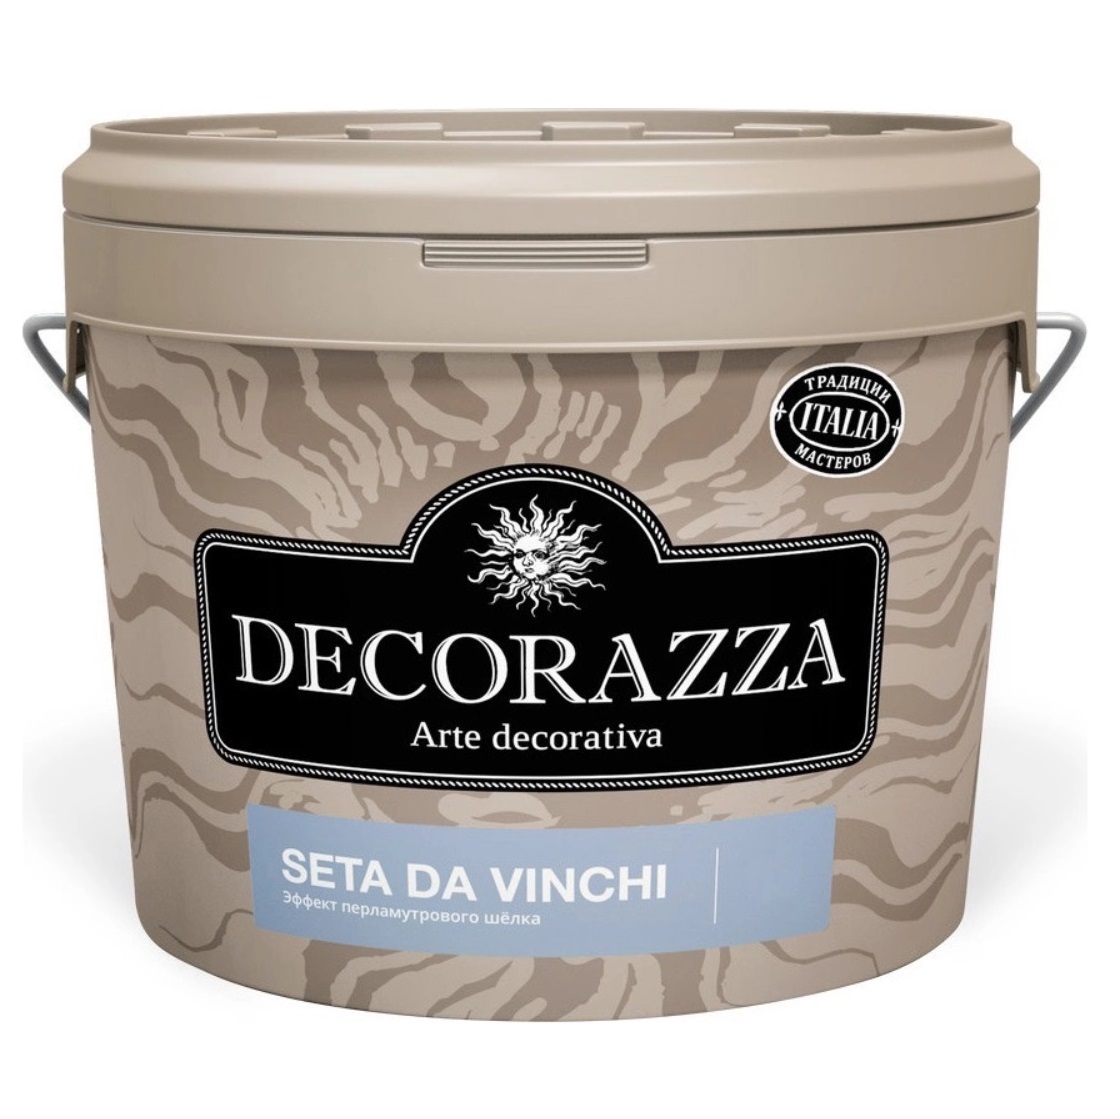 Декоративное покрытие с  более выраженным эффектом перламутрового шёлка Decorazza dz seta da vinci sd 001. 1 к декоративное покрытие с более выраженным эффектом перламутрового шёлка decorazza dz seta da vinci sd 001 5 кг